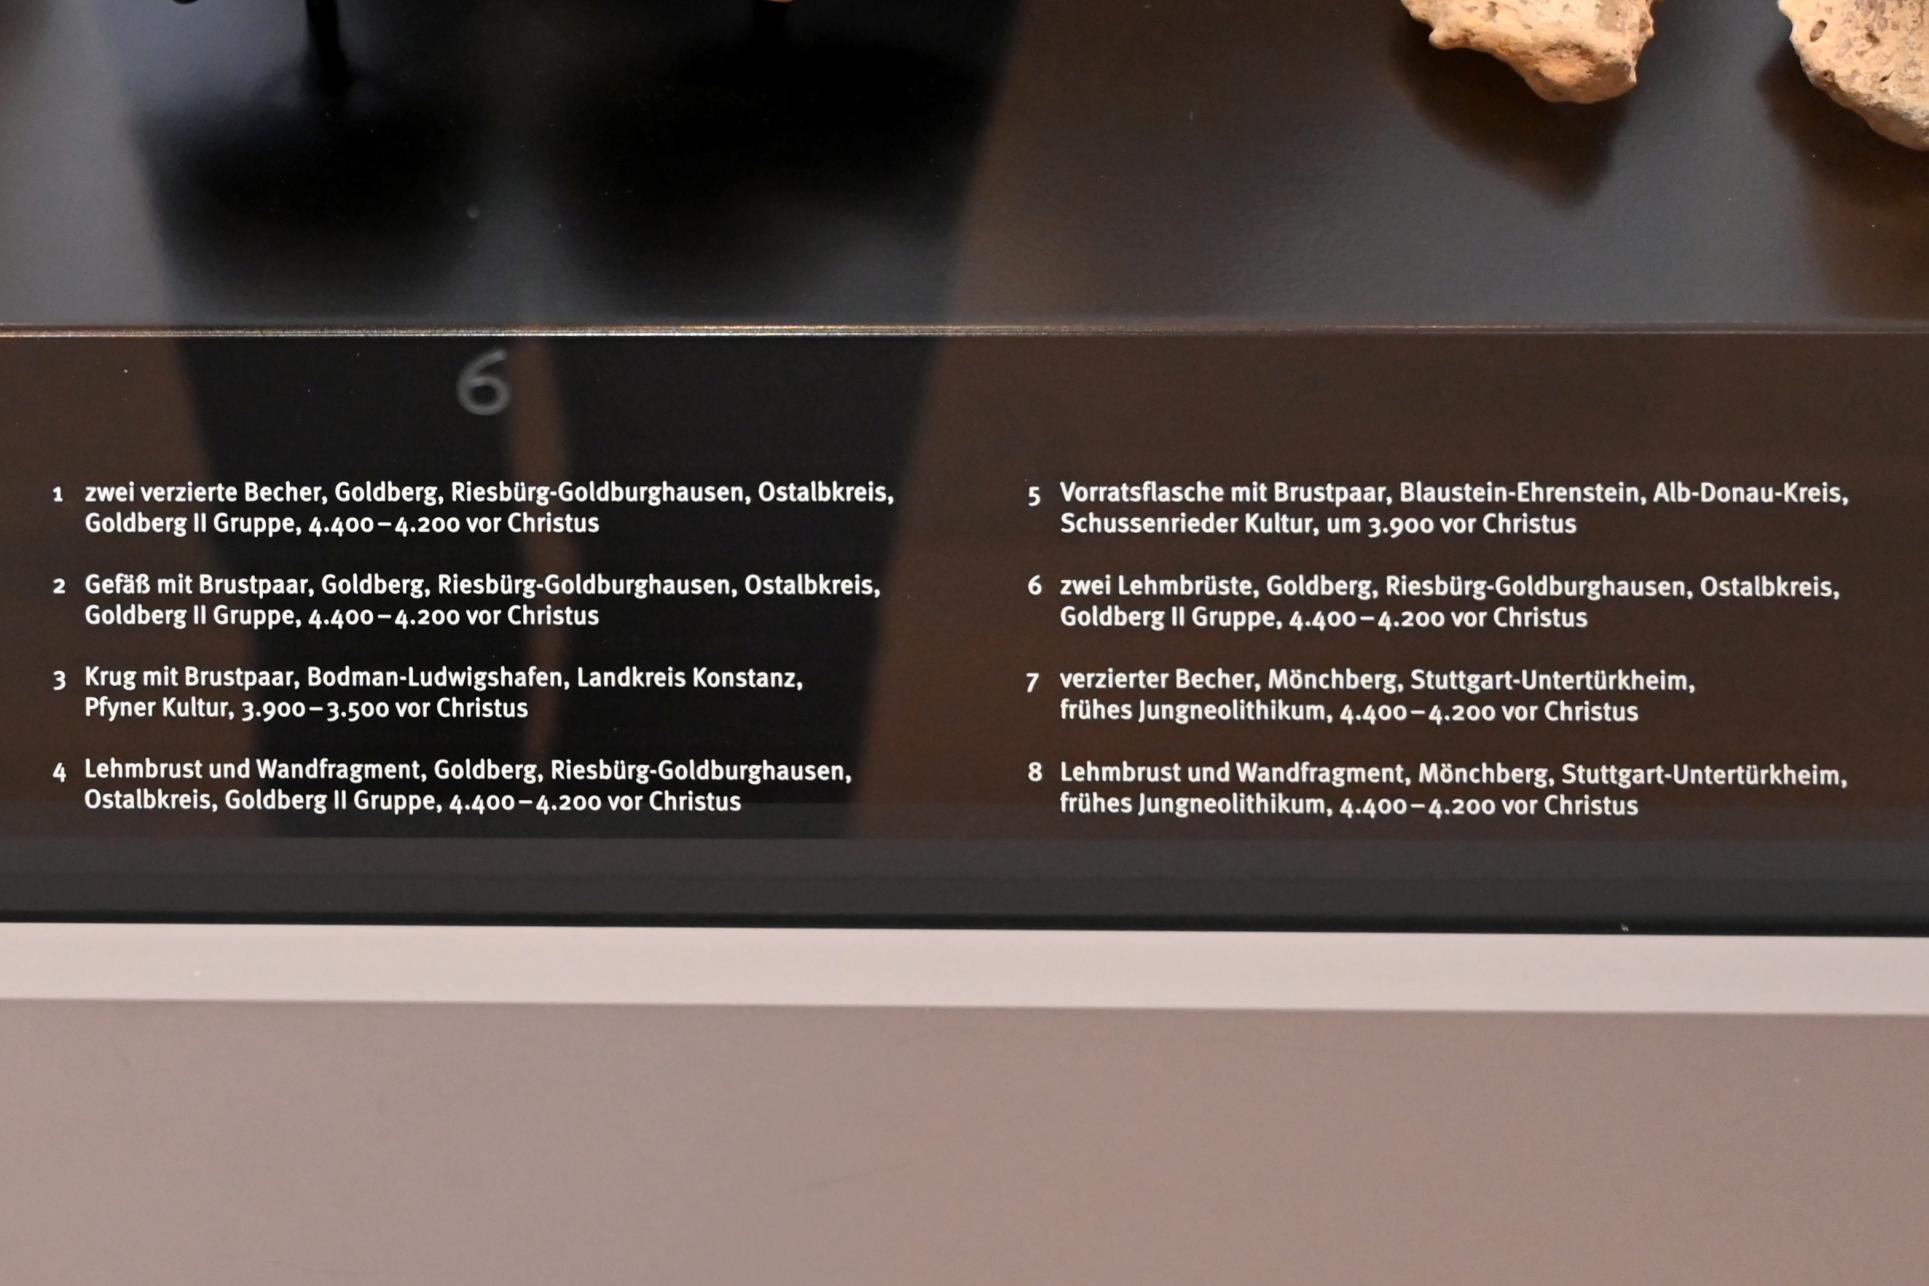 Gefäß mit Brustpaar, Neolithikum (Jungsteinzeit), 5500 - 1700 v. Chr., 4400 - 4200 v. Chr., Bild 2/3